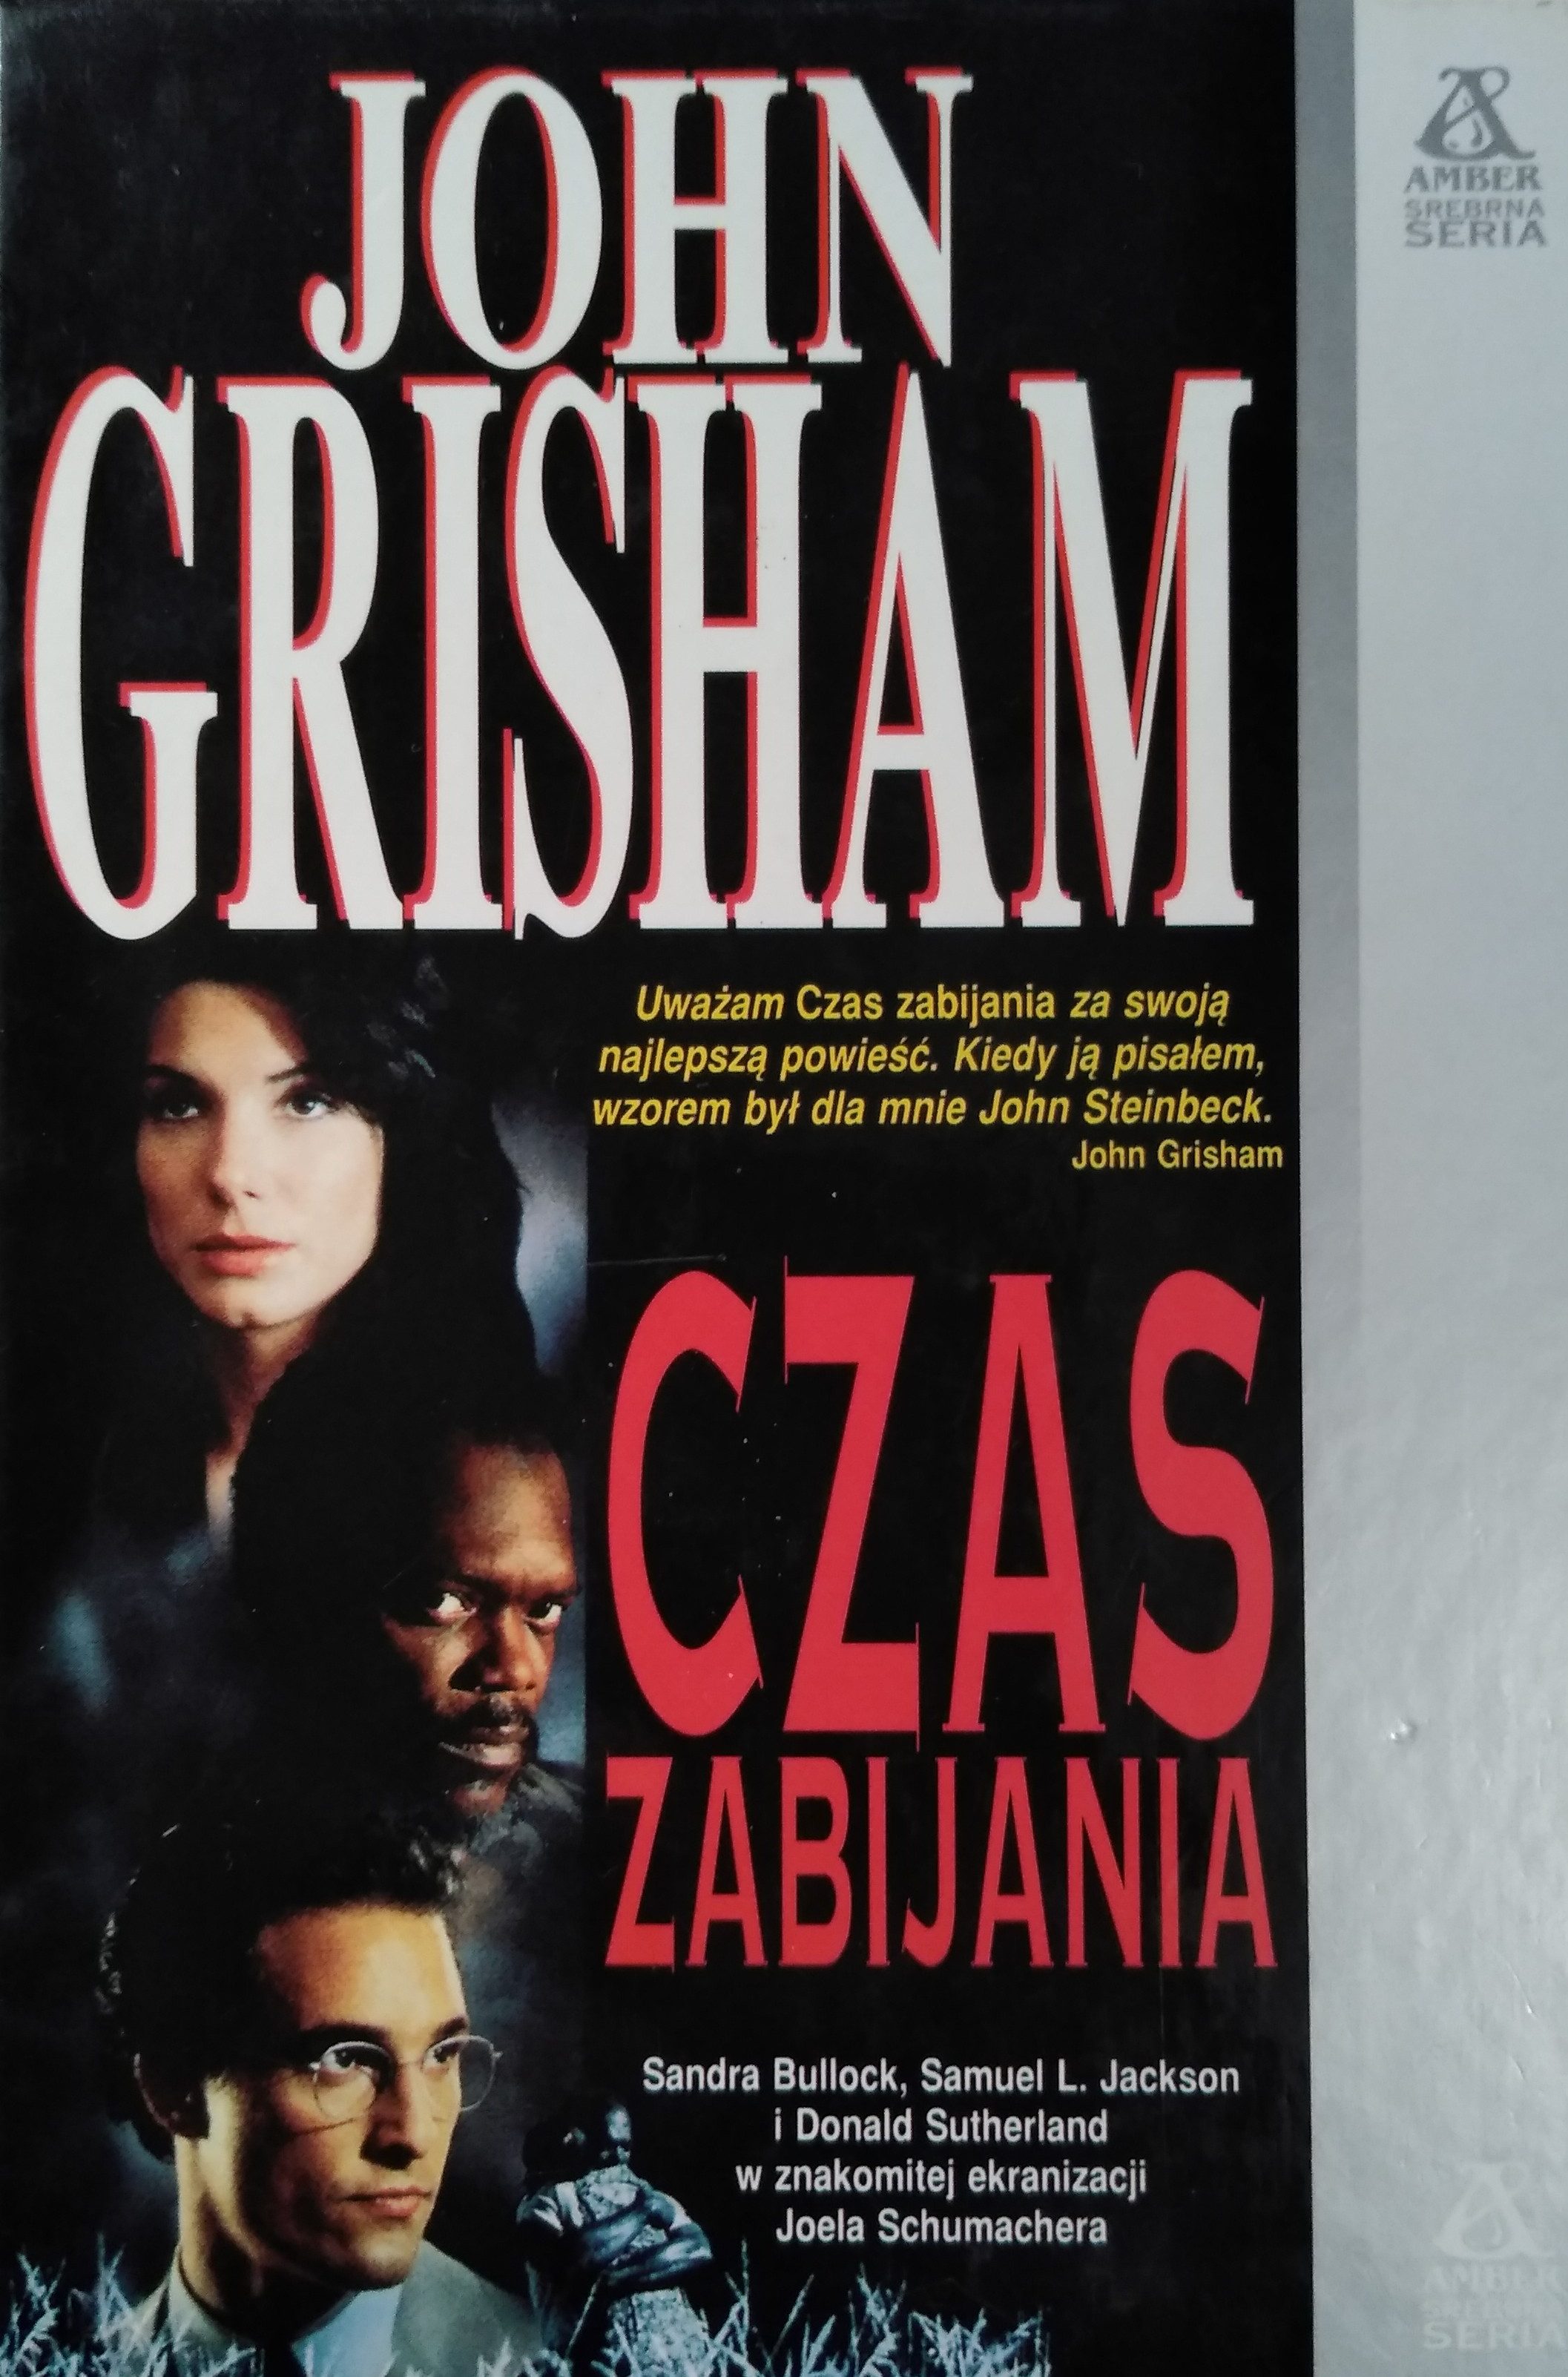 Read more about the article Recenzja książki: „Czas zabijania” Johna Grishama